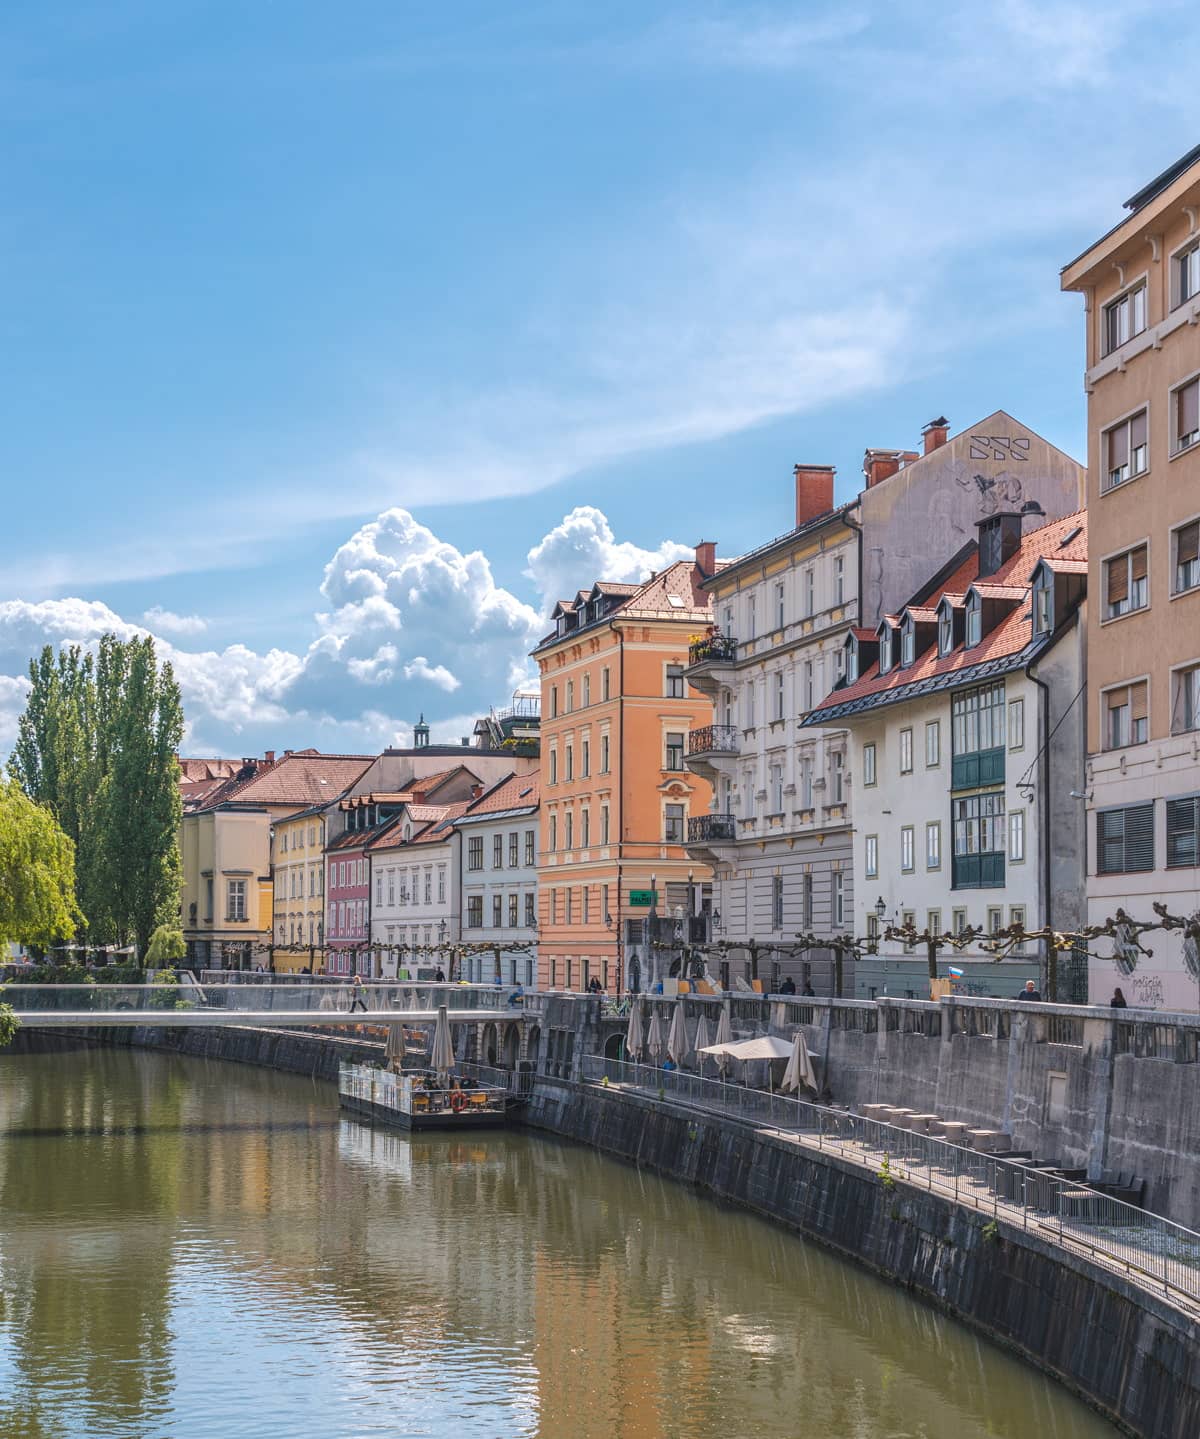 Ljubljana in June